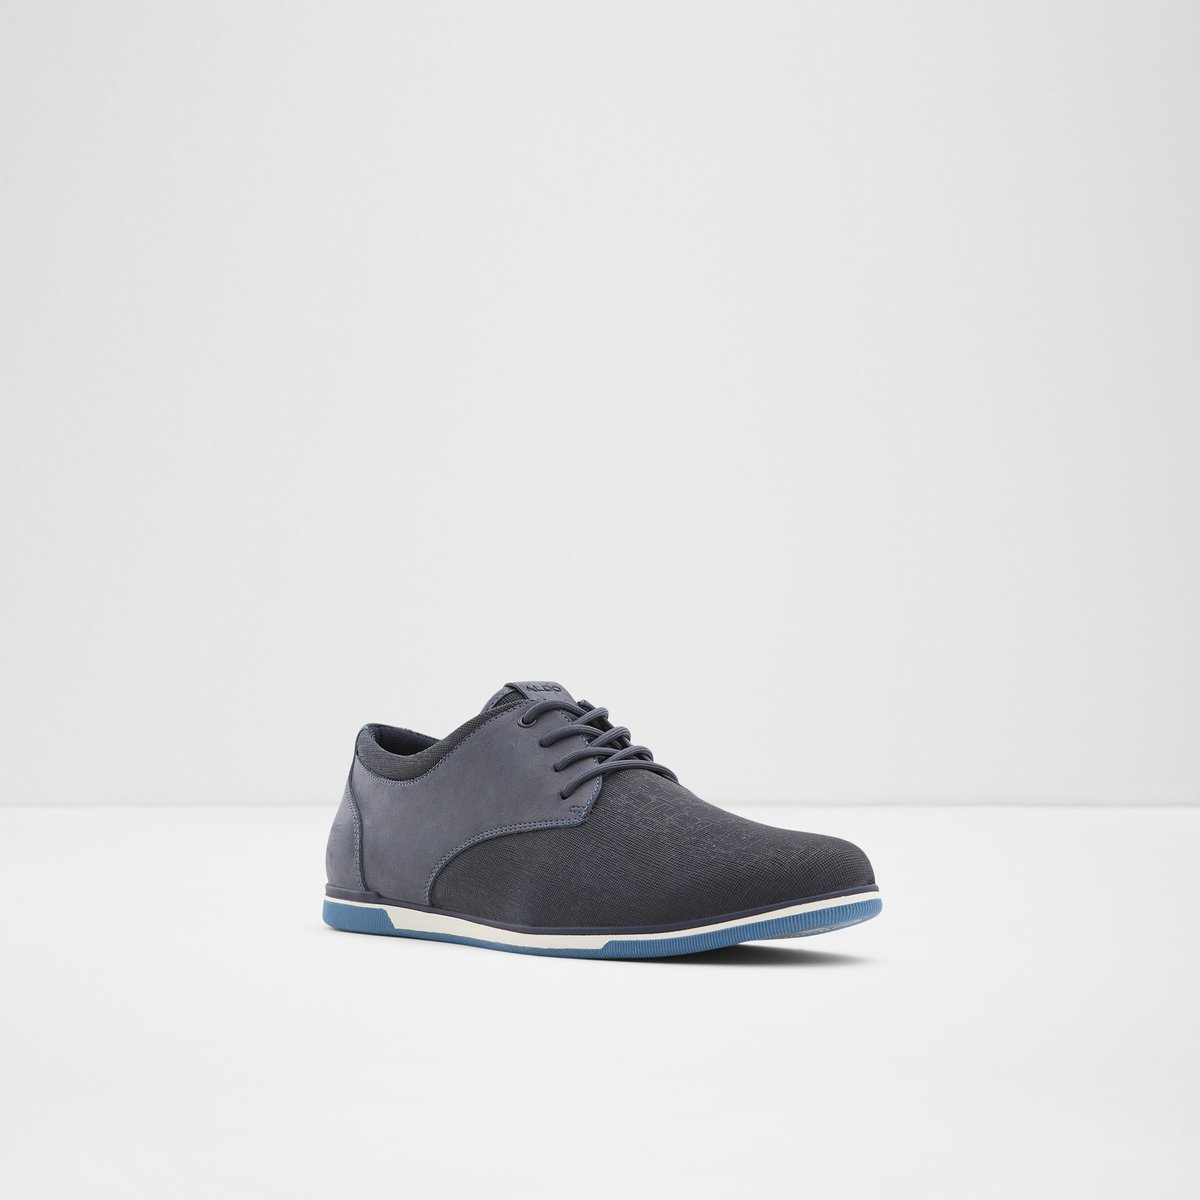 Heron Navy Men's Casual Shoes | ALDO Canada